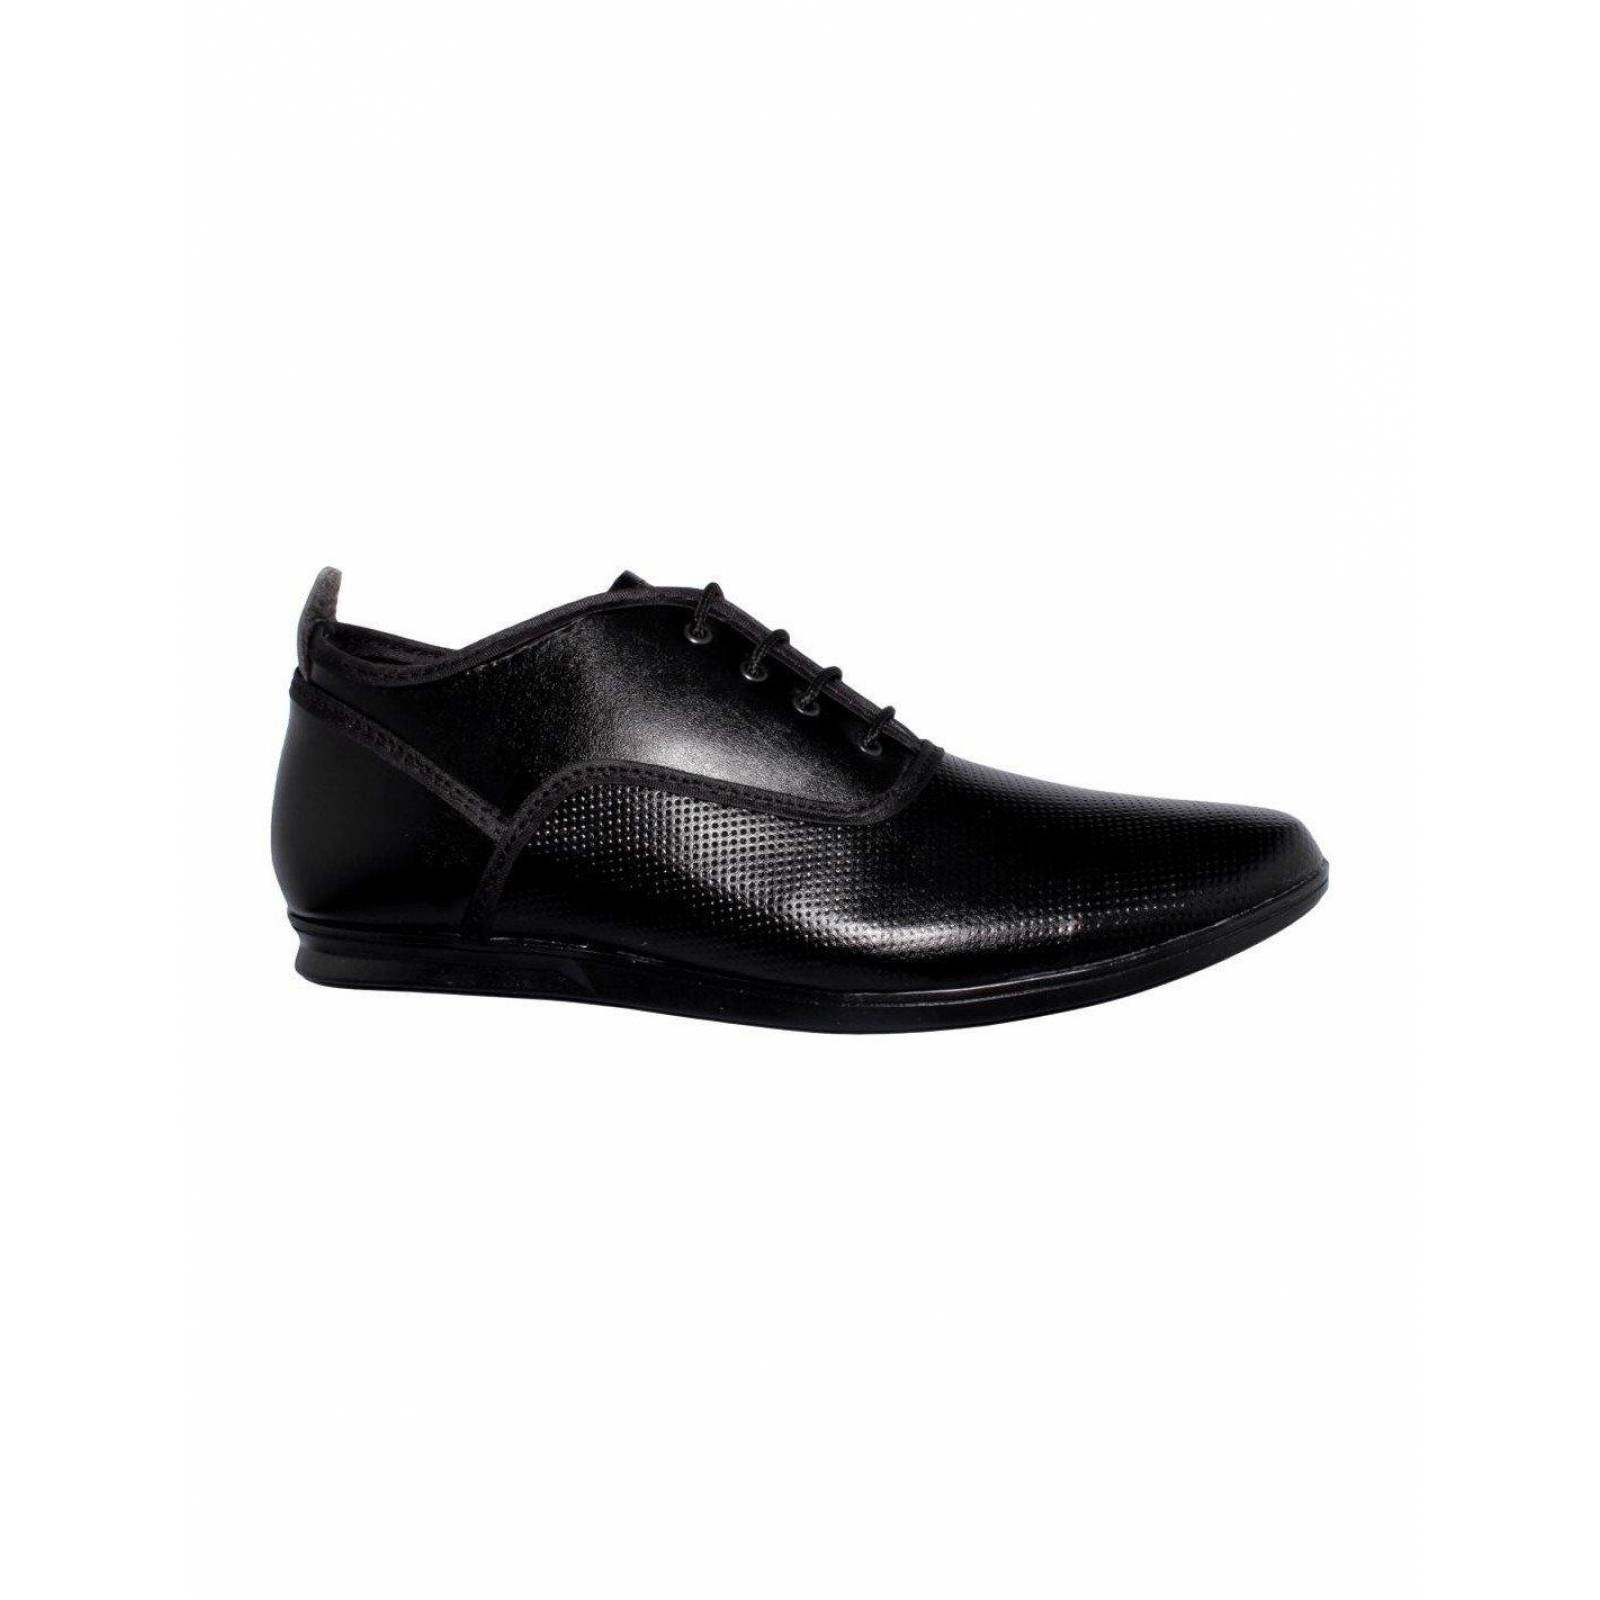 Zapatos Para Hombre Estilo 0400Al7 Piel Perforado Color Negro 